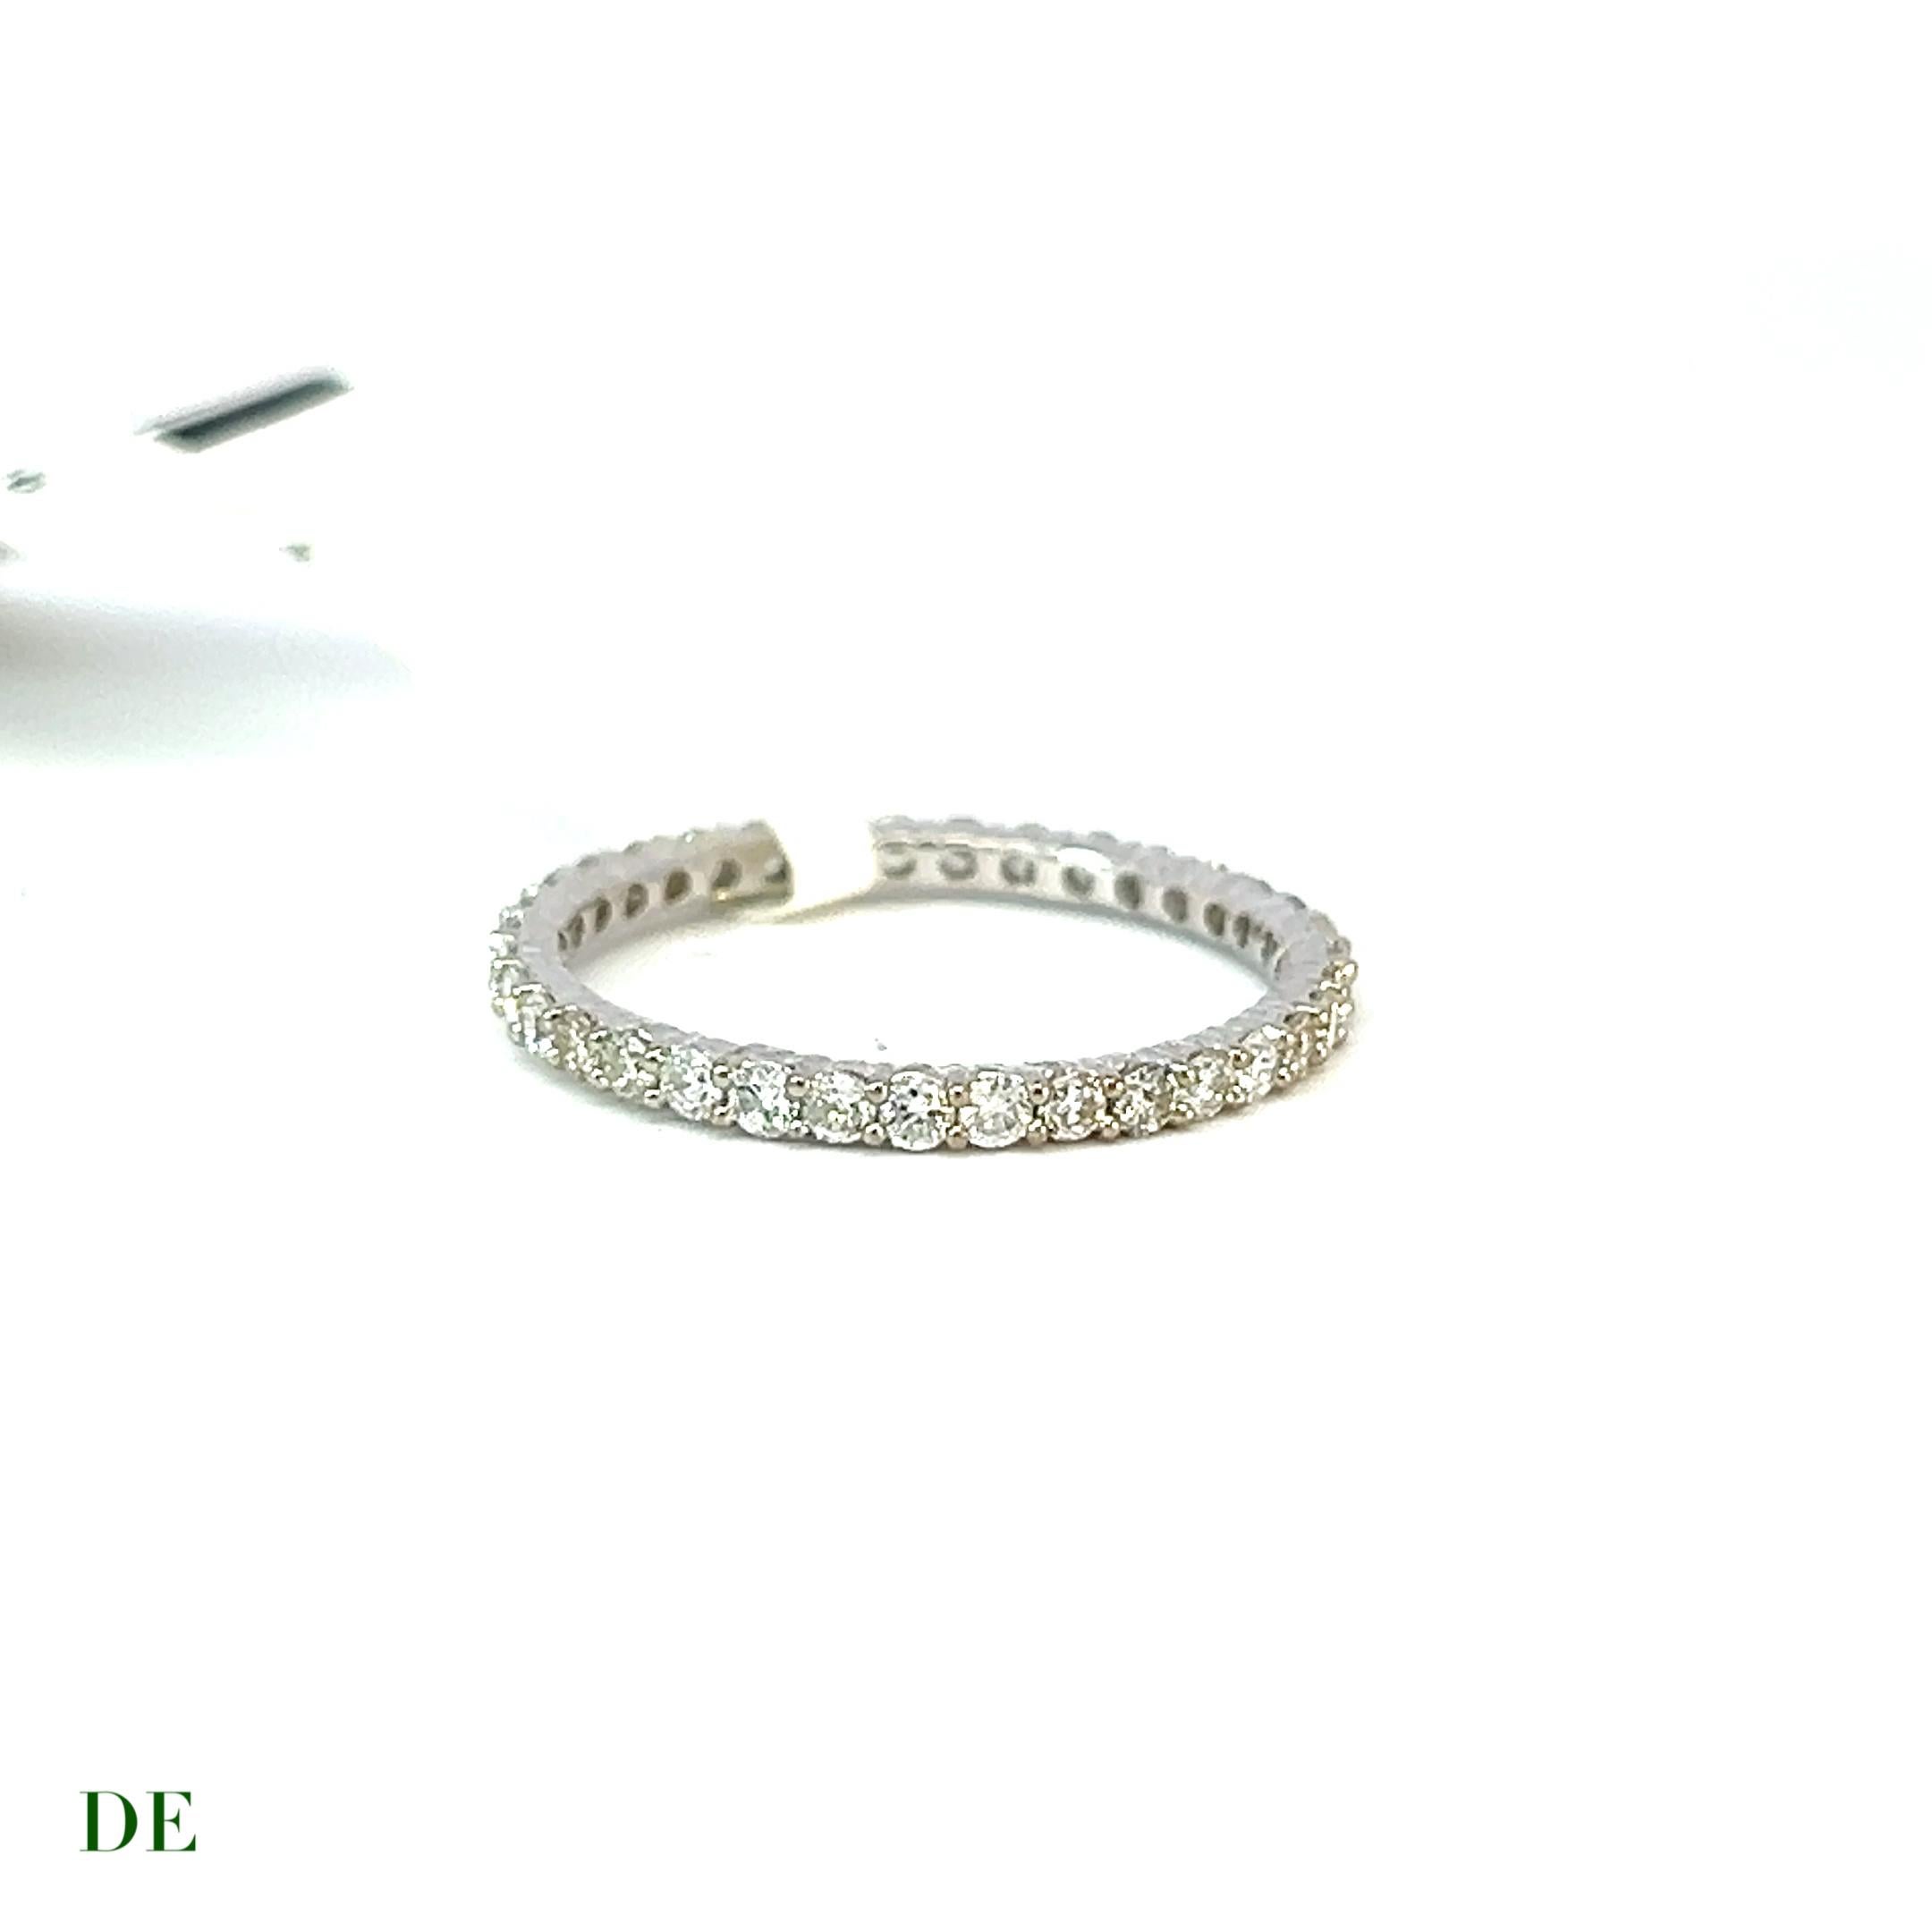 Classic 14k Gold .686 Carat Elegance Band Diamond Ring

Voici la bague classique en or 14k de 0,686 carat pour un anneau d'éternité en diamant. Cette bague exquise respire l'élégance et la sophistication, ce qui en fait un choix parfait pour ceux